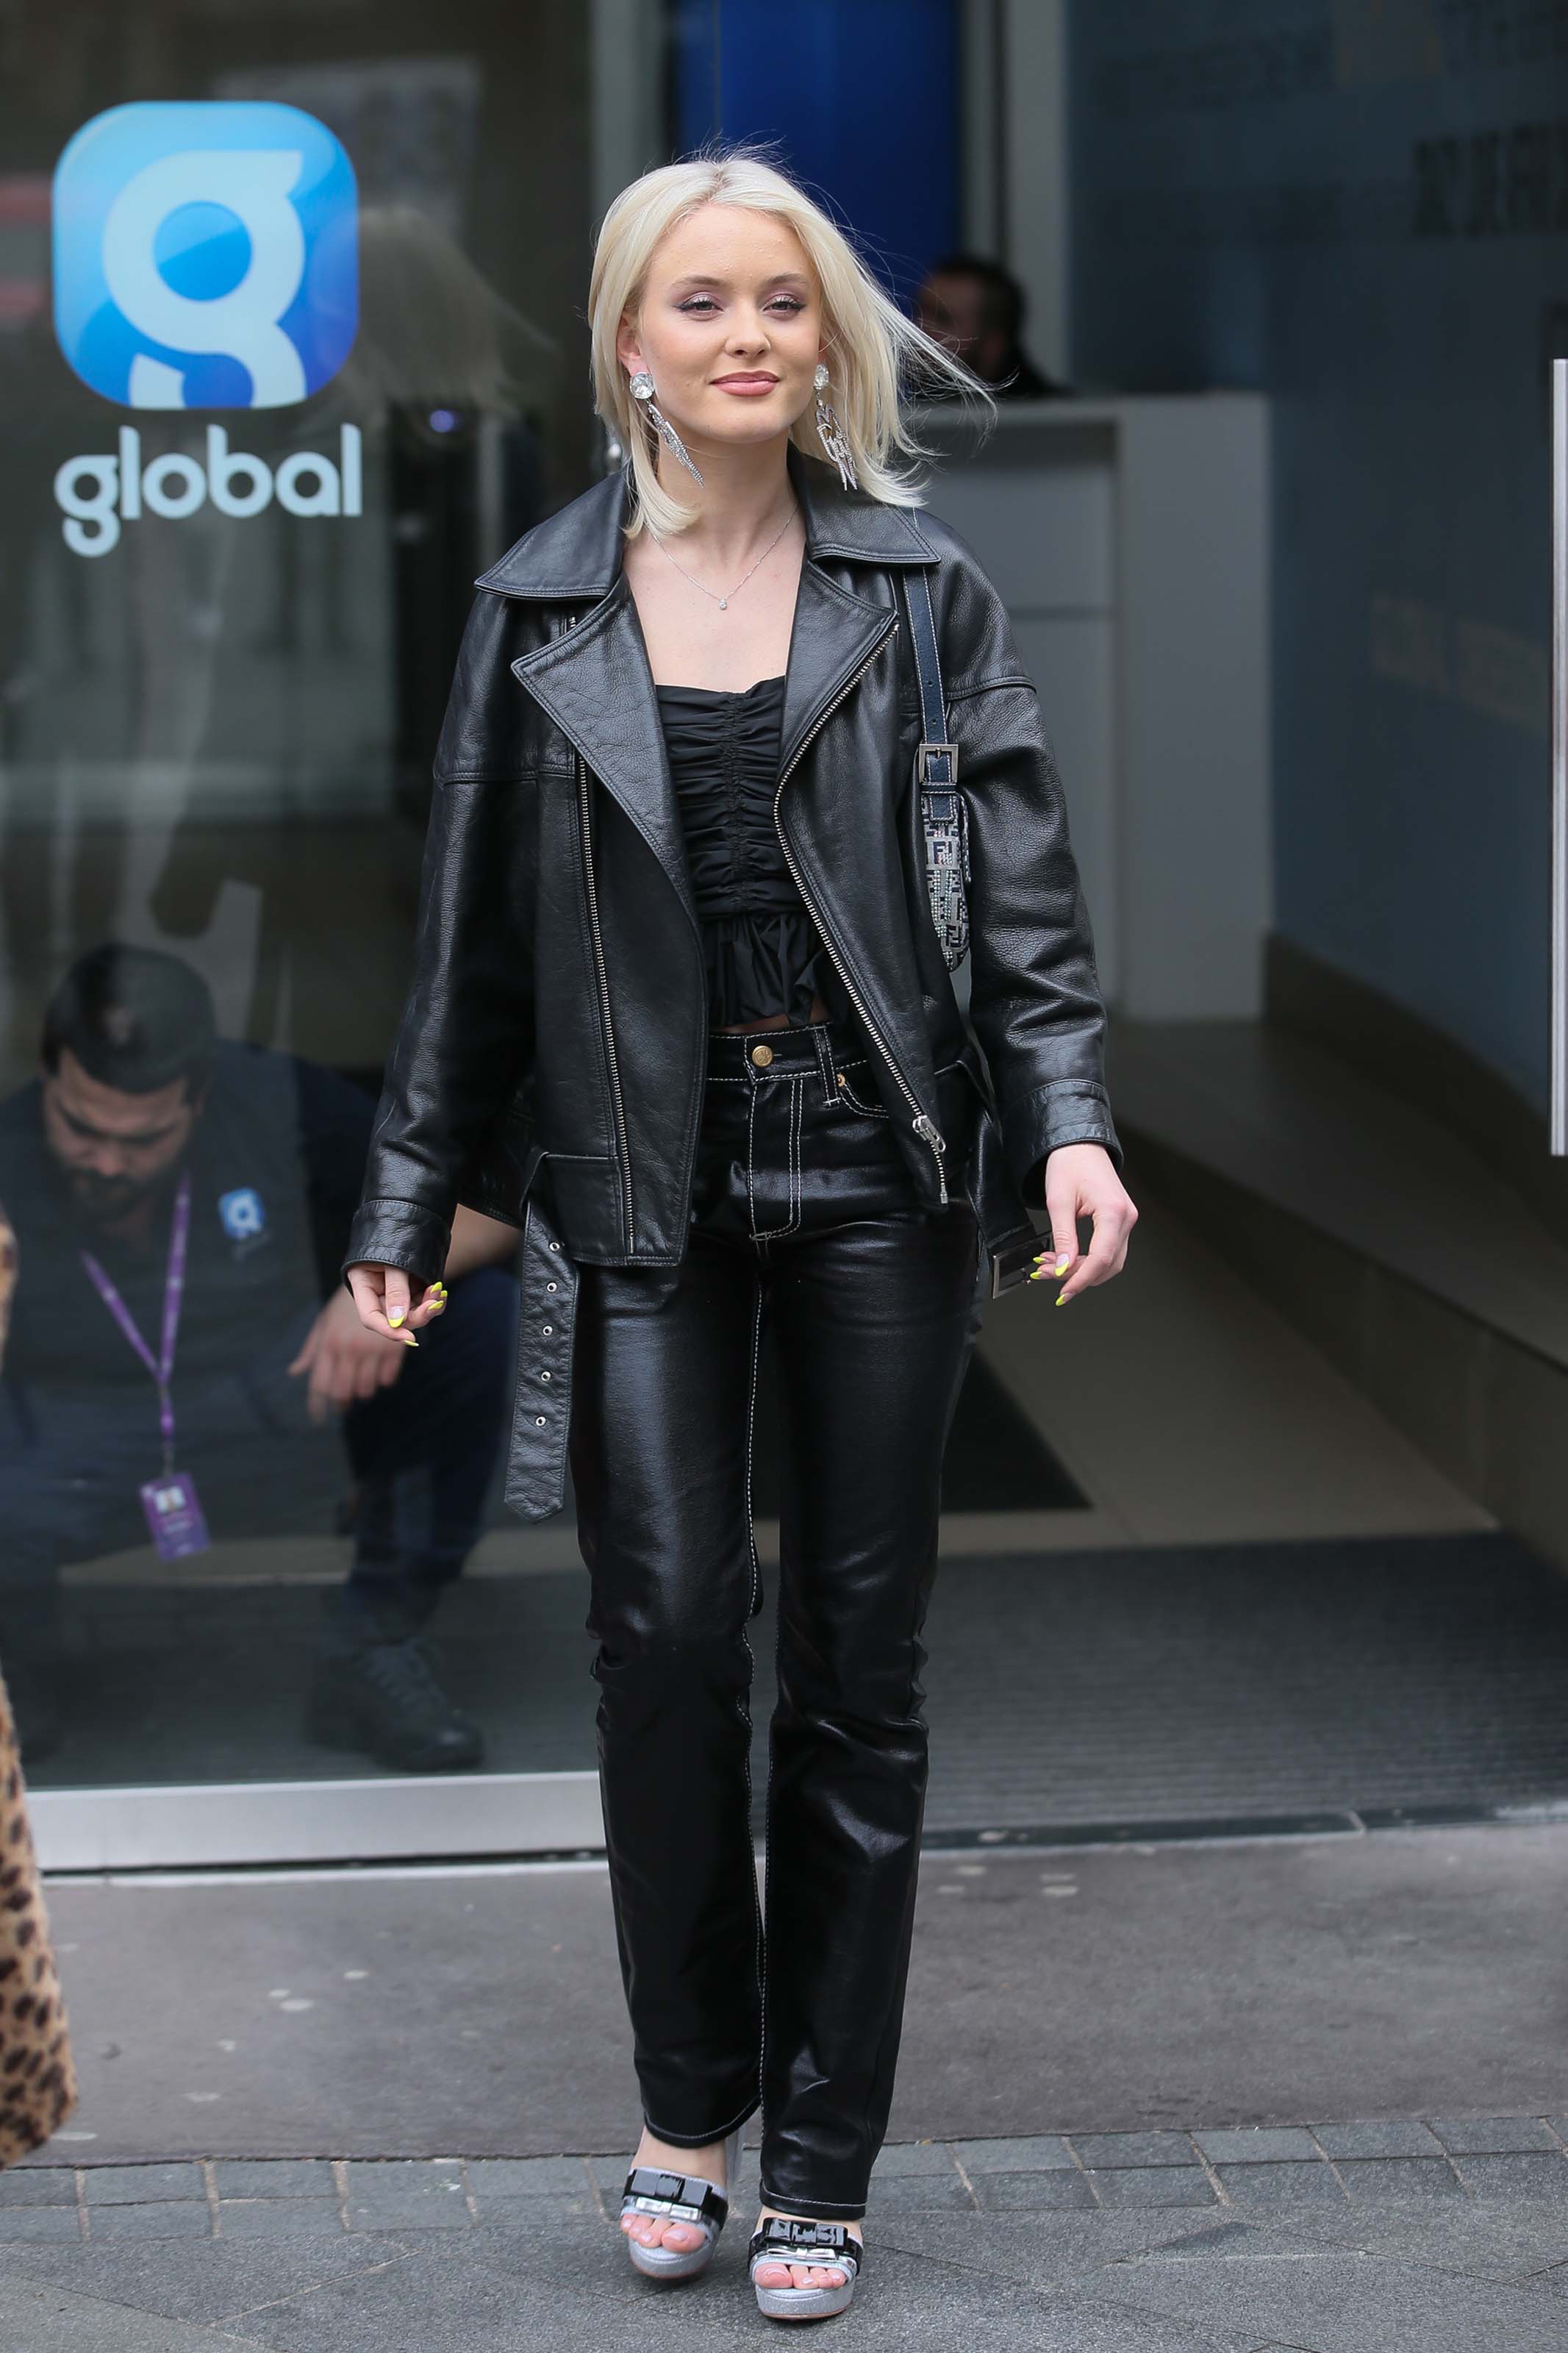 Zara Larsson at Global Studios